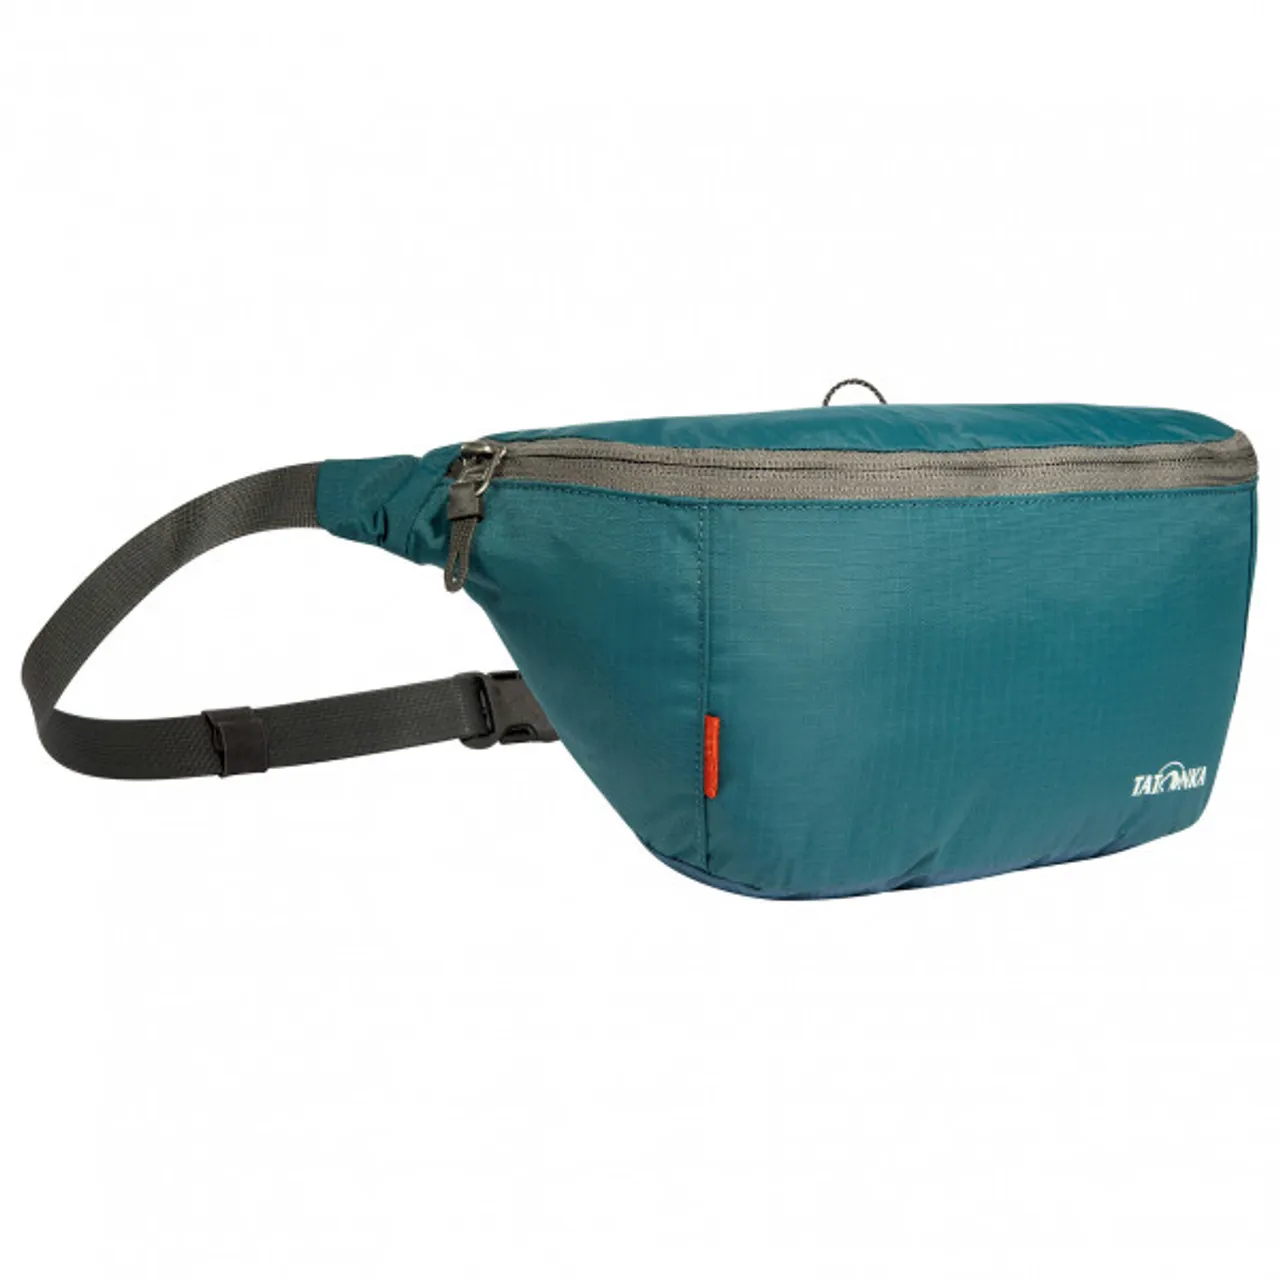 Tatonka - Ilium S - Hip bag size One Size, turquoise